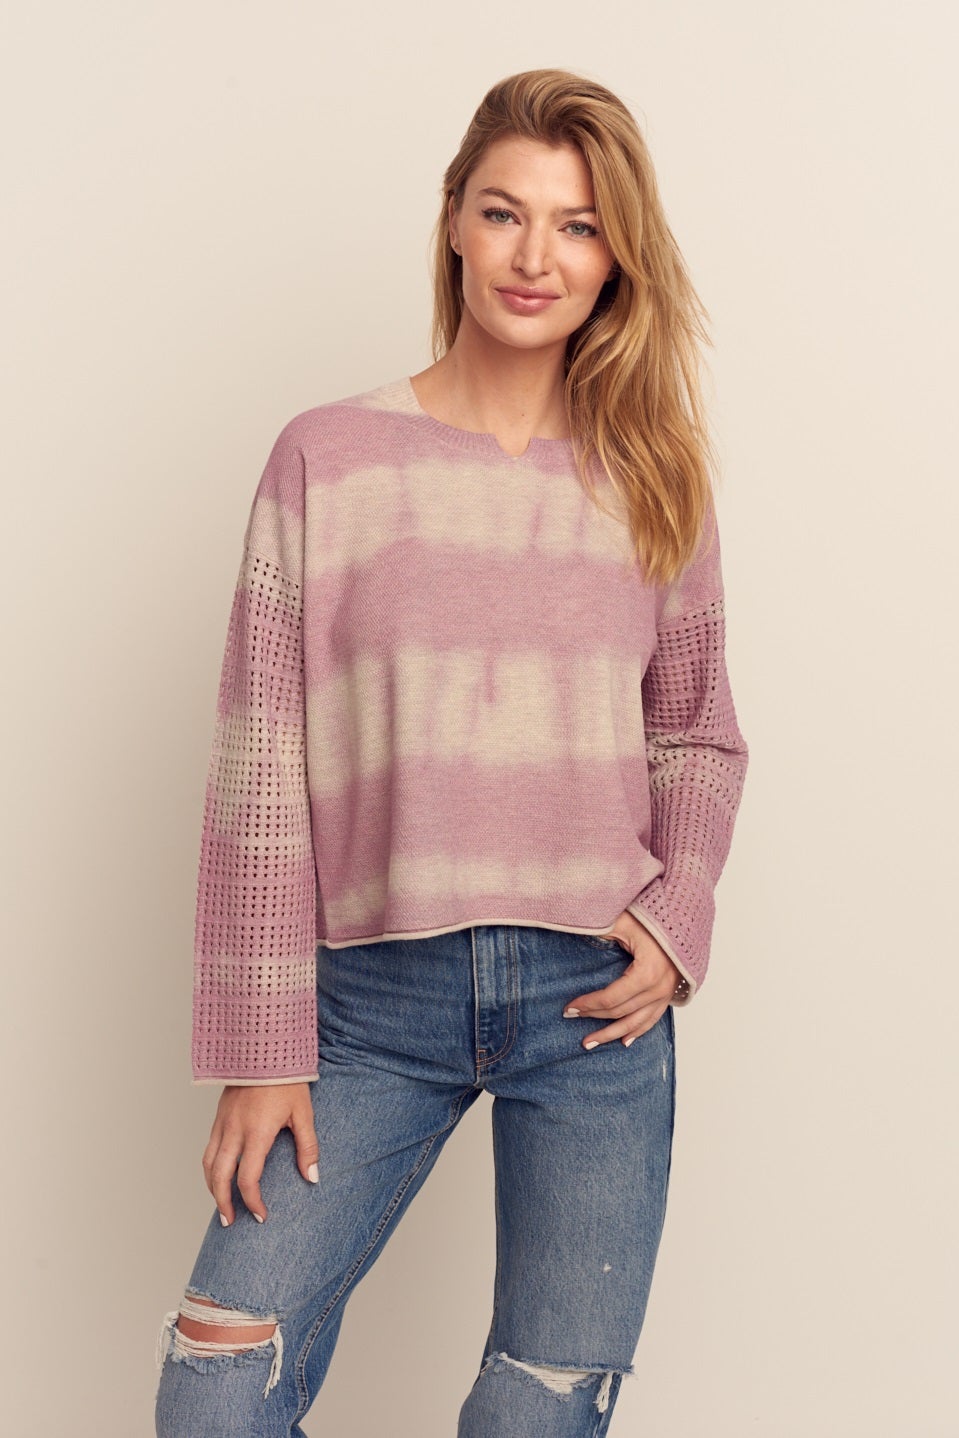 Hazy Hues Sweater